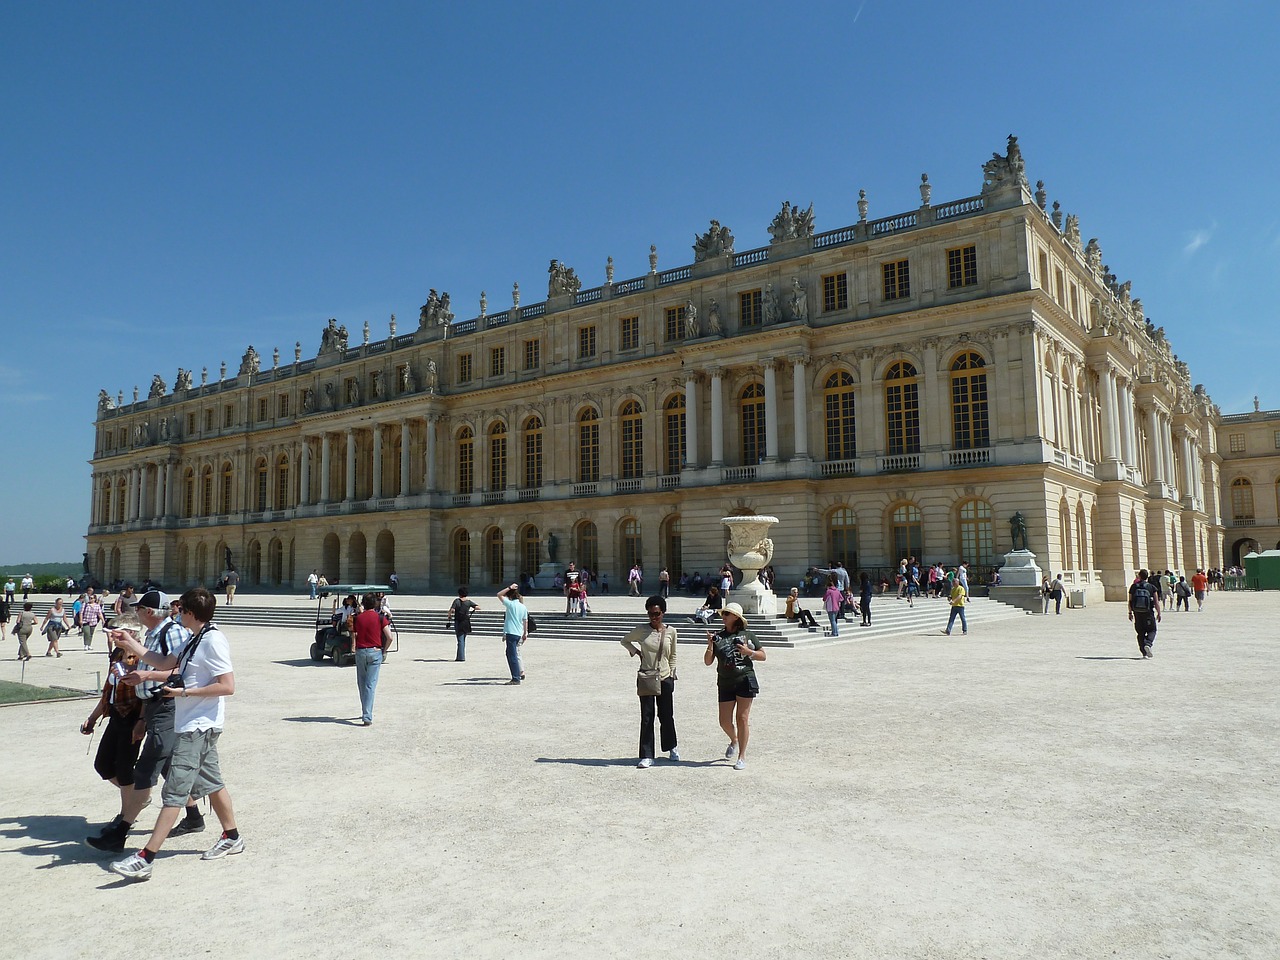 Avec l'affluence touristique, les pickpocket sont à l'affût au château de Versailles - illustration © Pixabay